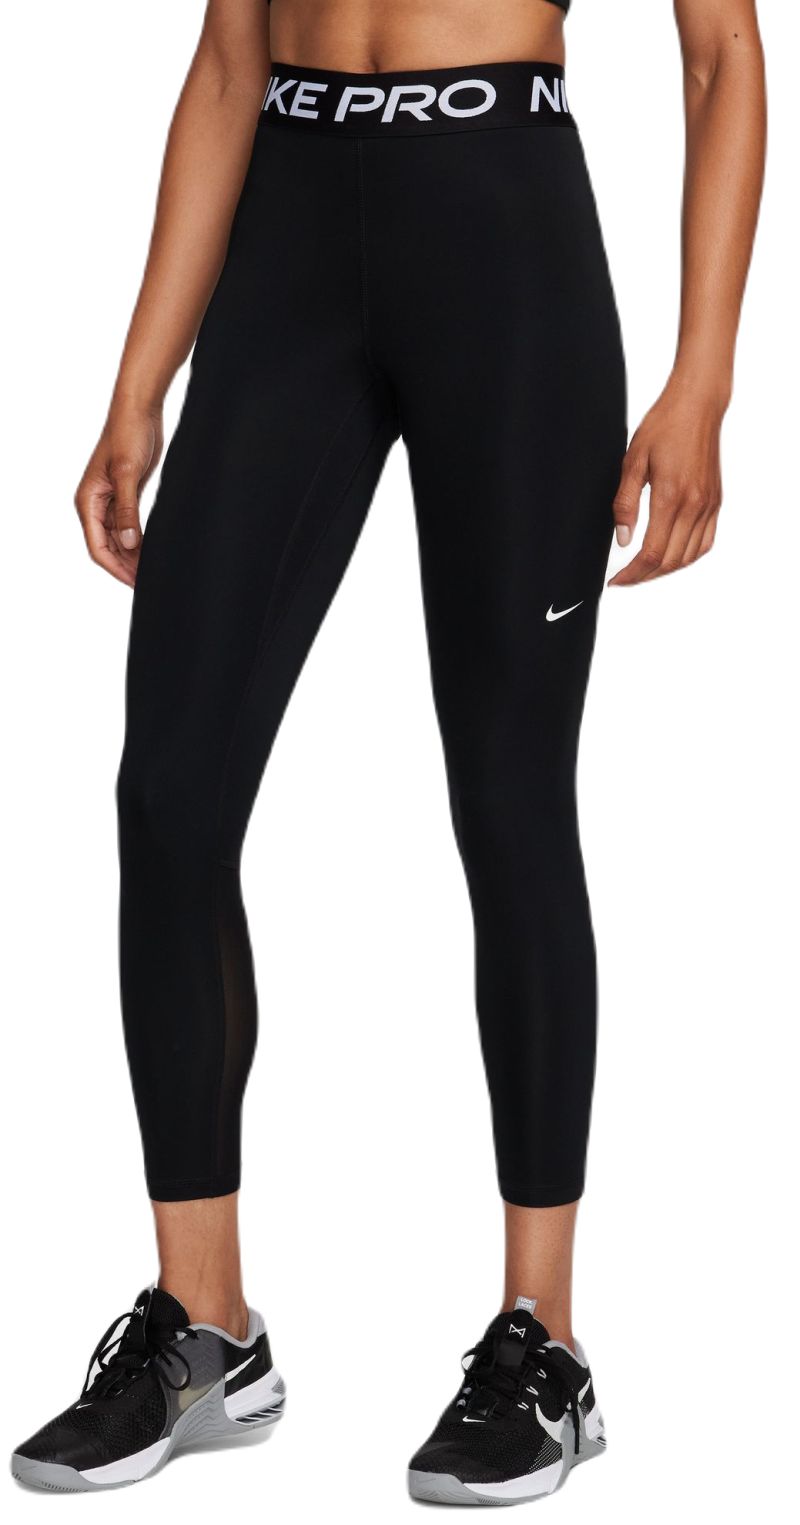 Nike Womens Pro Mid-Rise Legging, Black / White